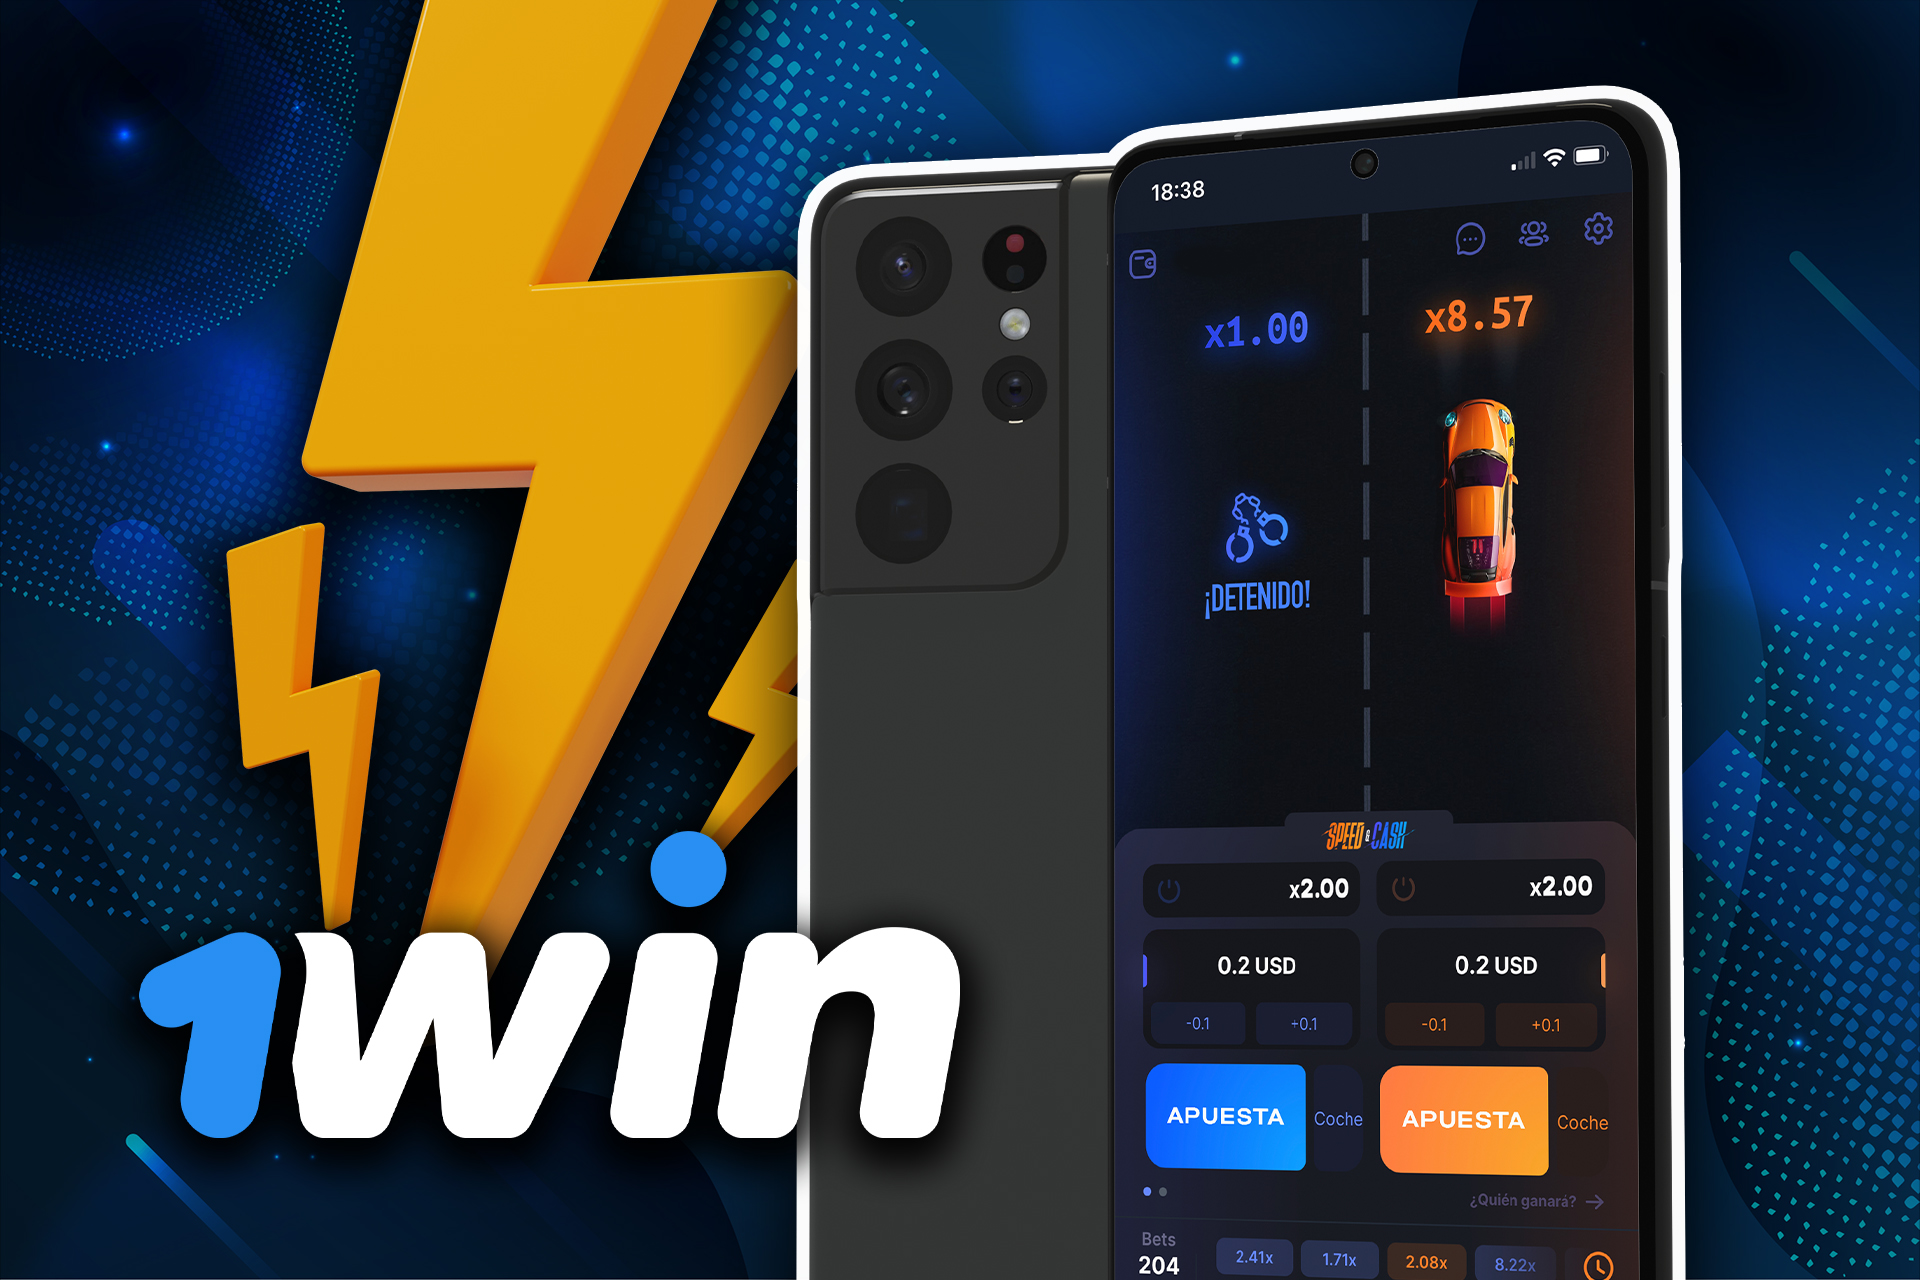 Instala la aplicación 1win para iOS y juega a Speed and Cash en tu iPhone.